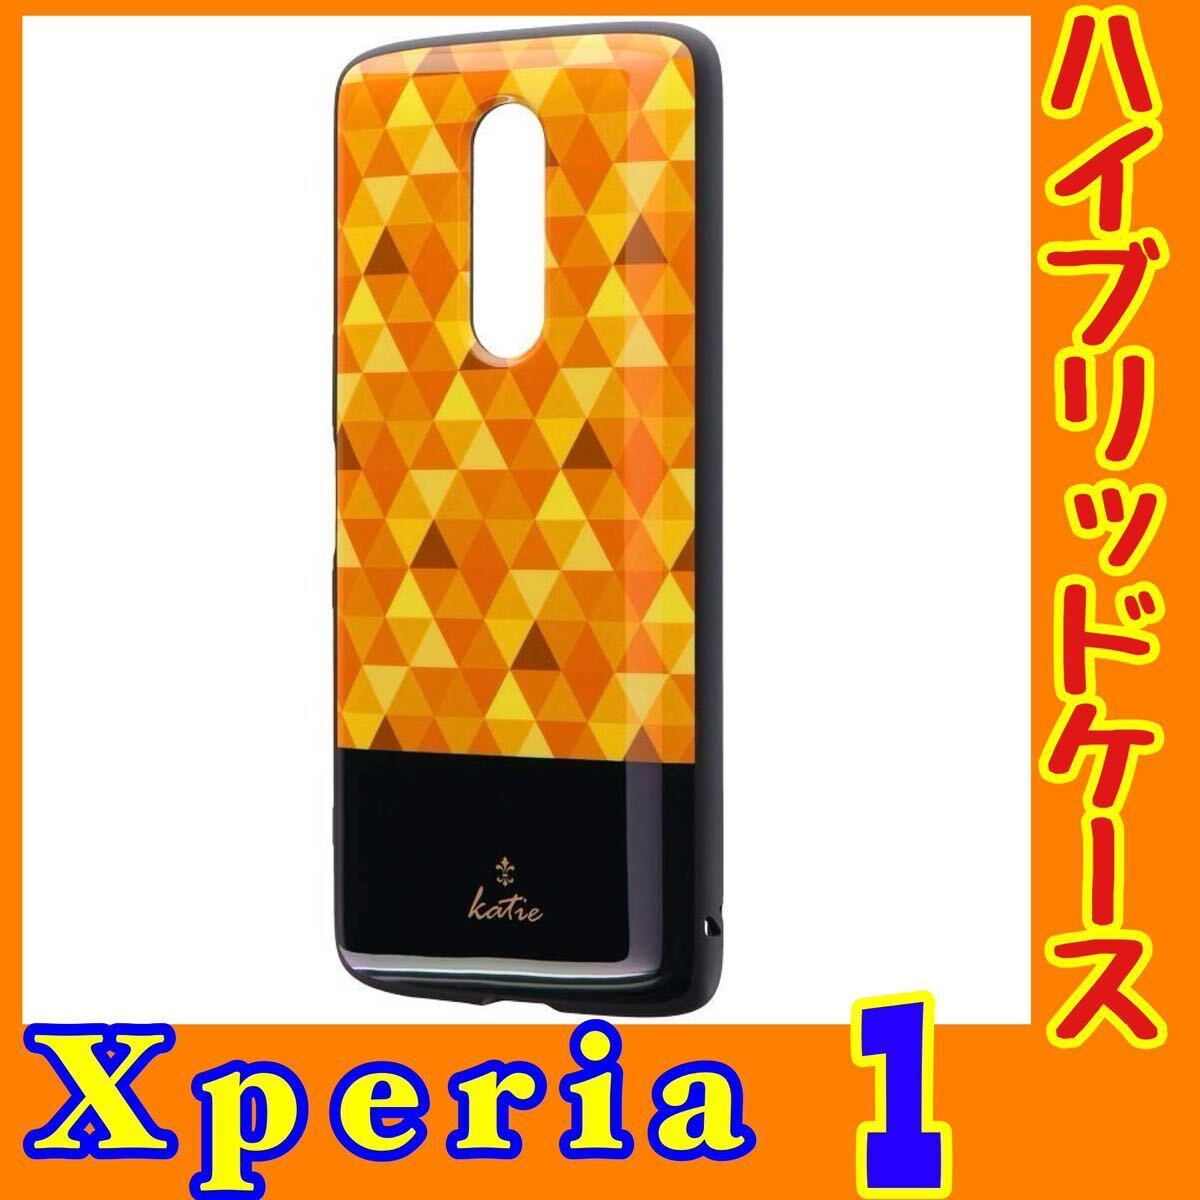 Xperia 1 ハイブリッドケース f2 モザイクイエロー「PALLET AIR Katie」SO-03L/SOV40/802SO MSソリューションズ ルプラス LP-19SX1HVDH_画像1